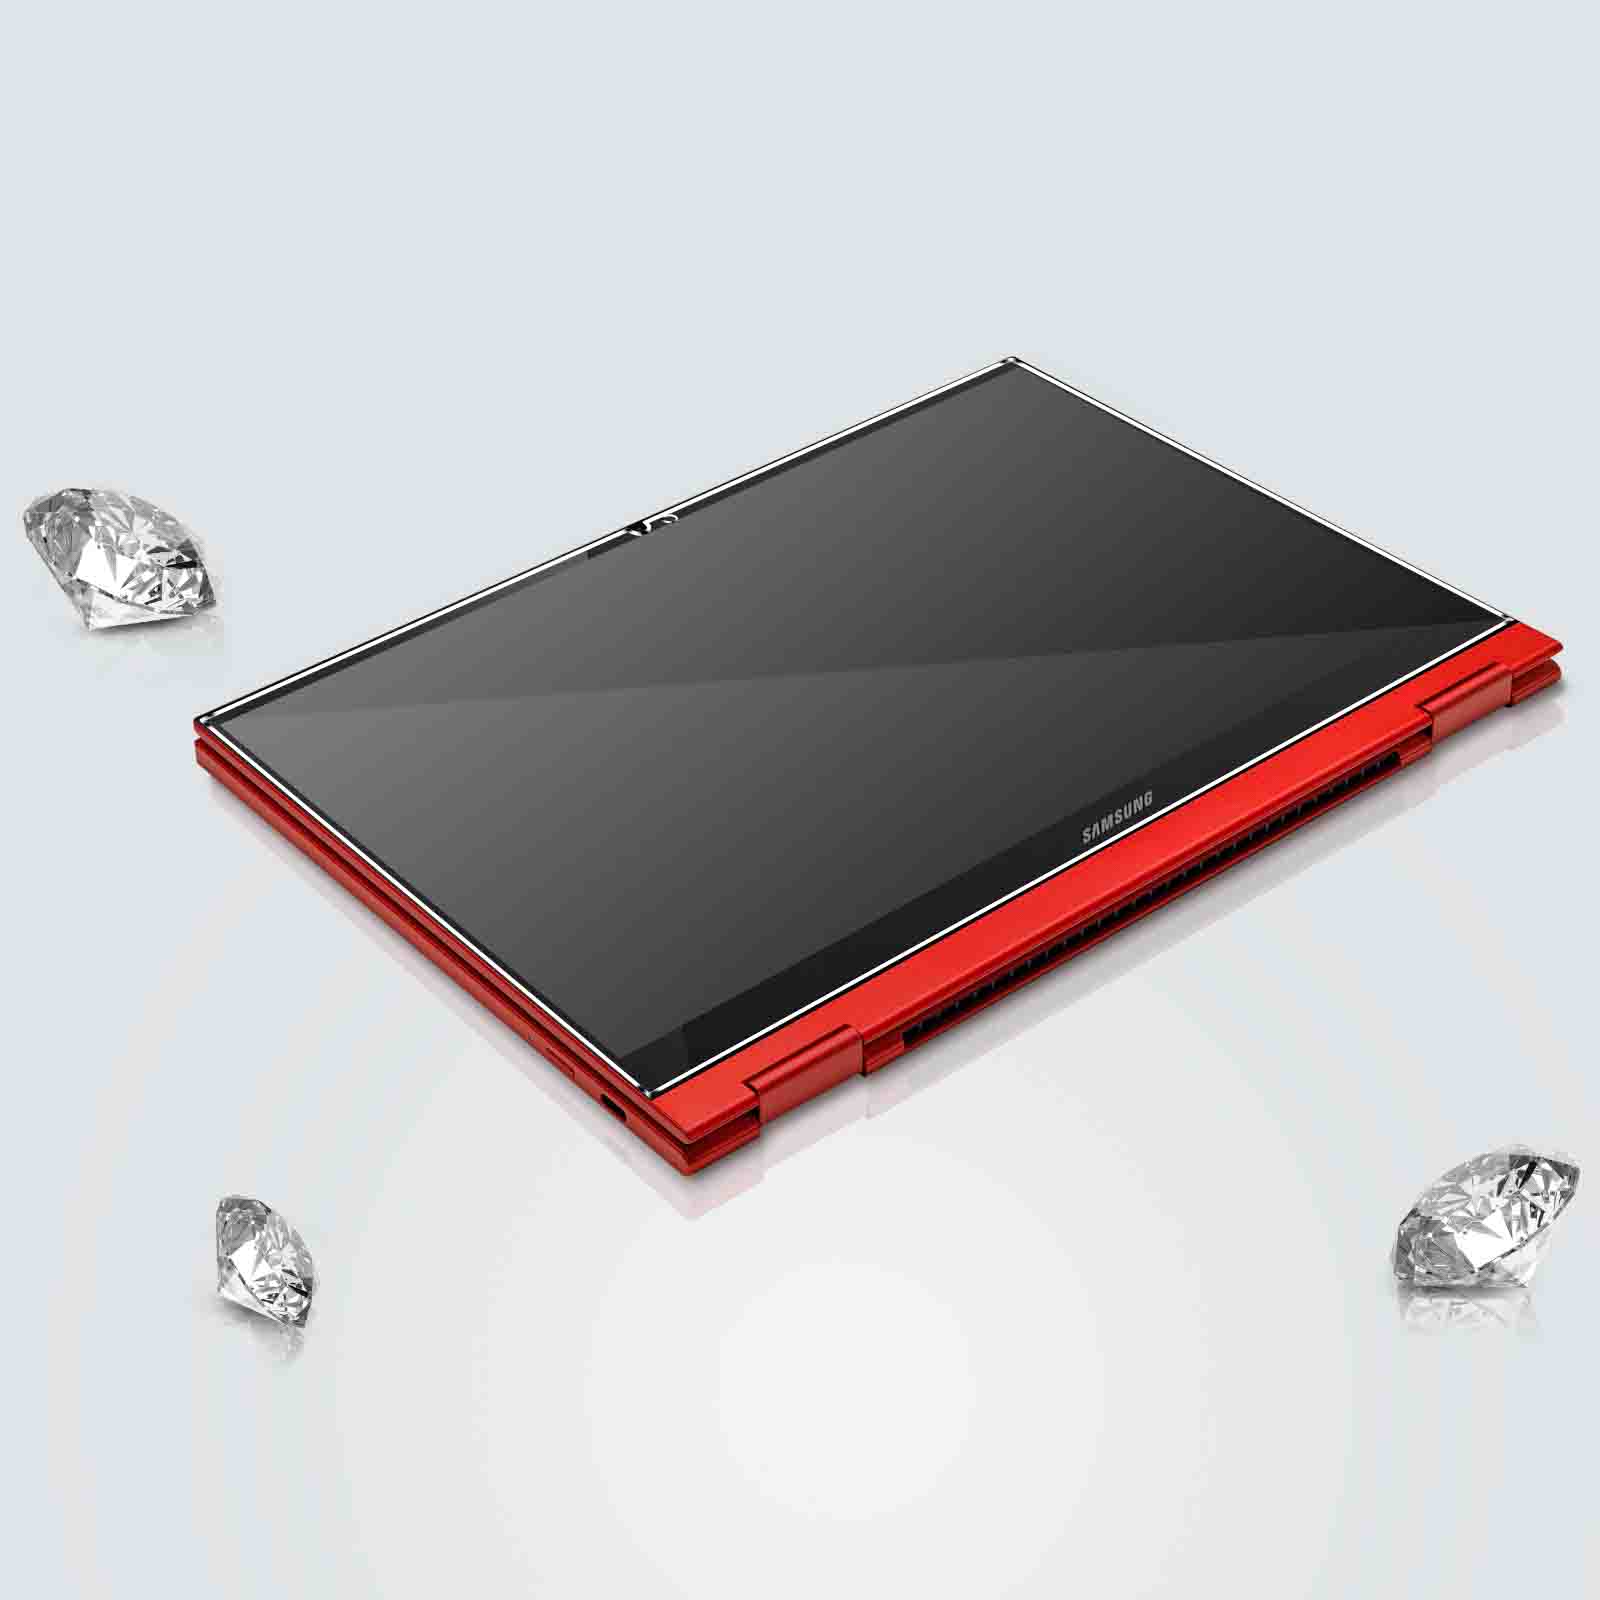 Protection écran 3mk Samsung Galaxy Chromebook 2 360 Flexible